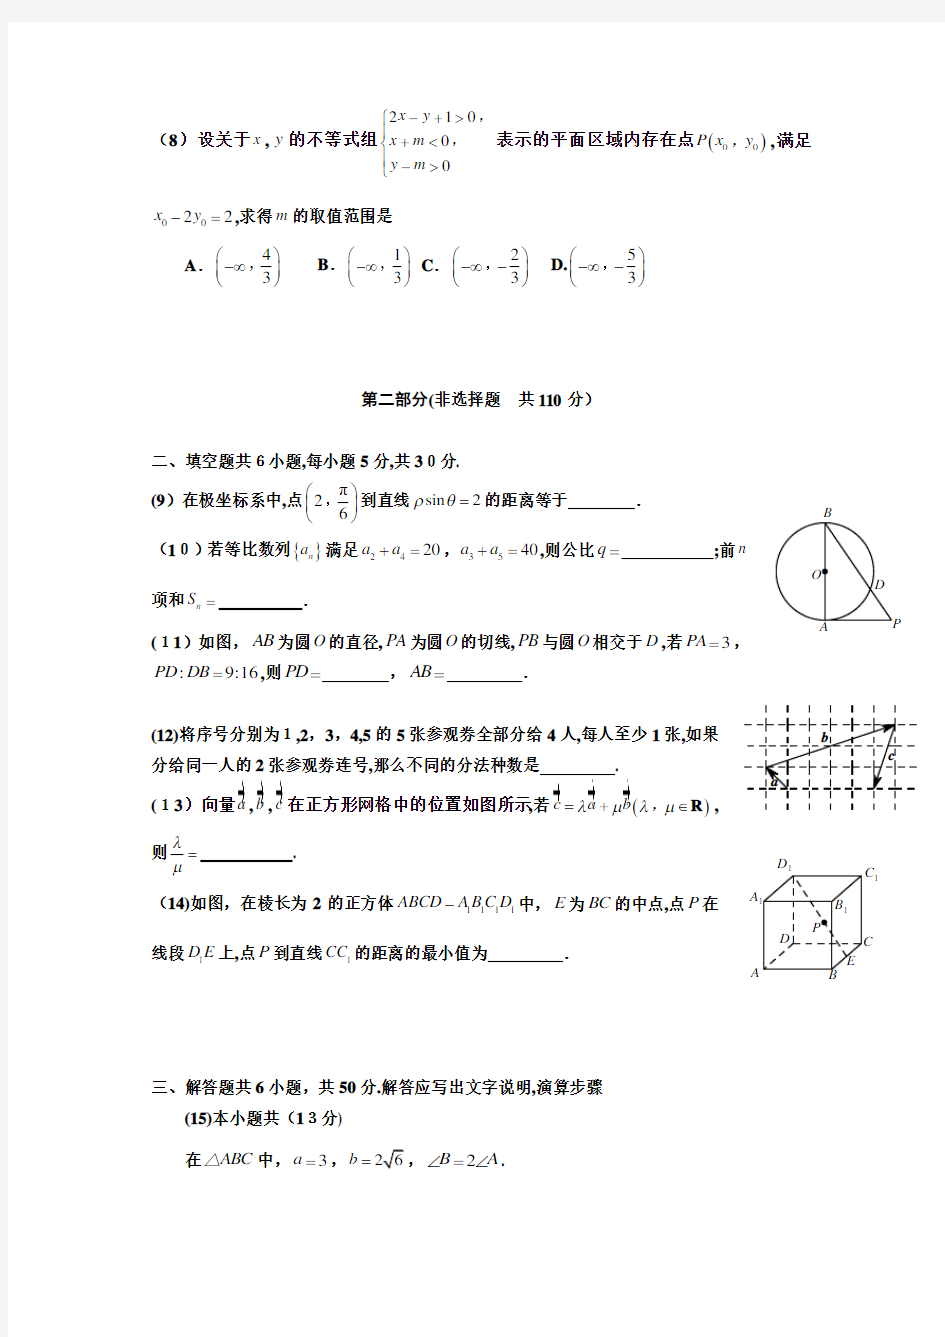 2013年北京高考理科数学试题及标准答案